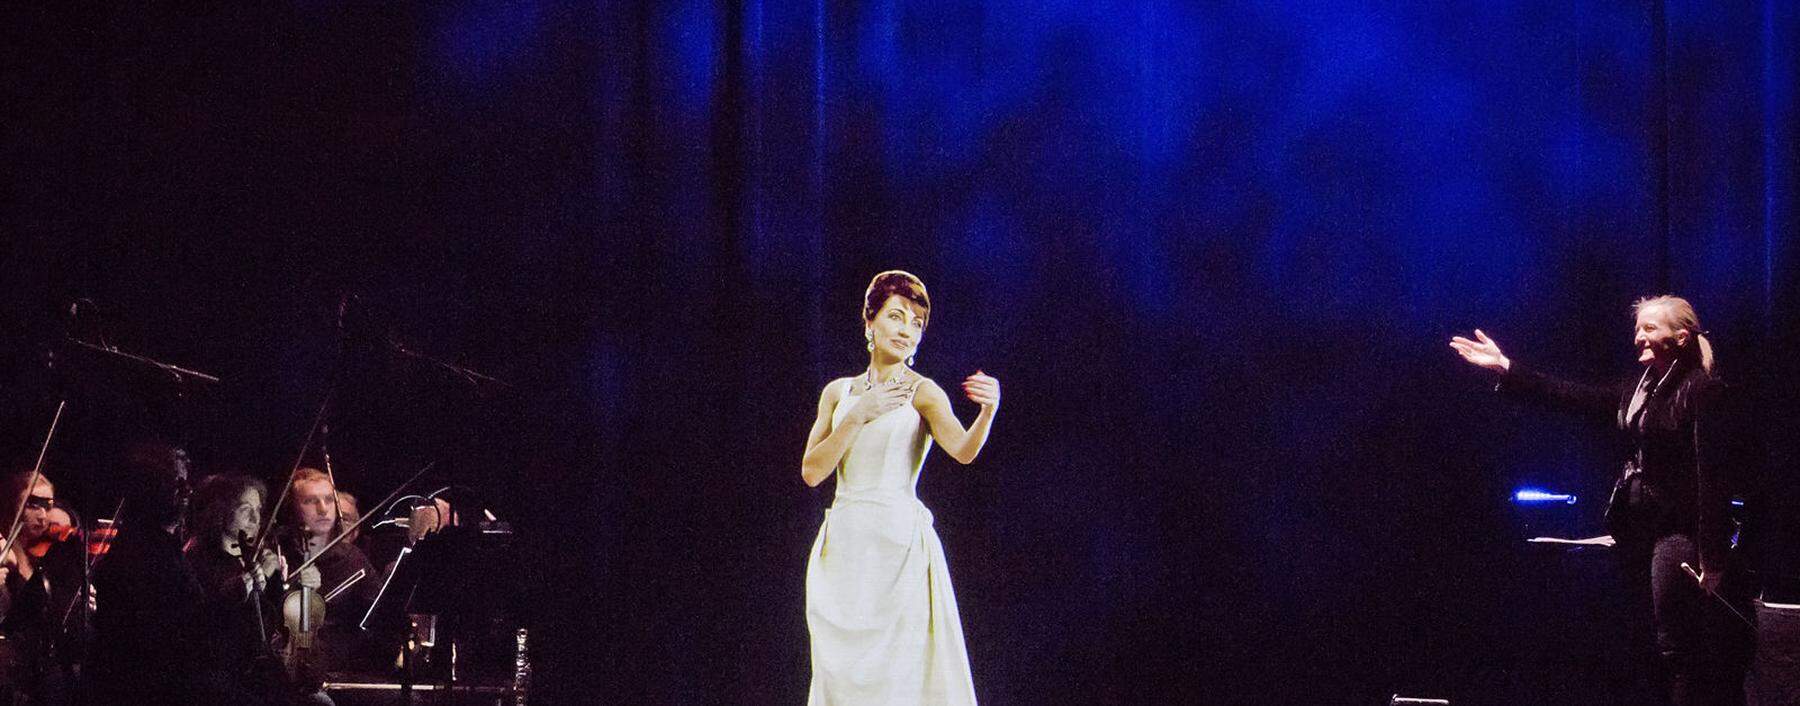 42 Jahre nach ihrem Tod stand Maria Callas im November in Berlin auf der Konzertbühne – als Hologramm. Ob sie das gewollt hätte? 